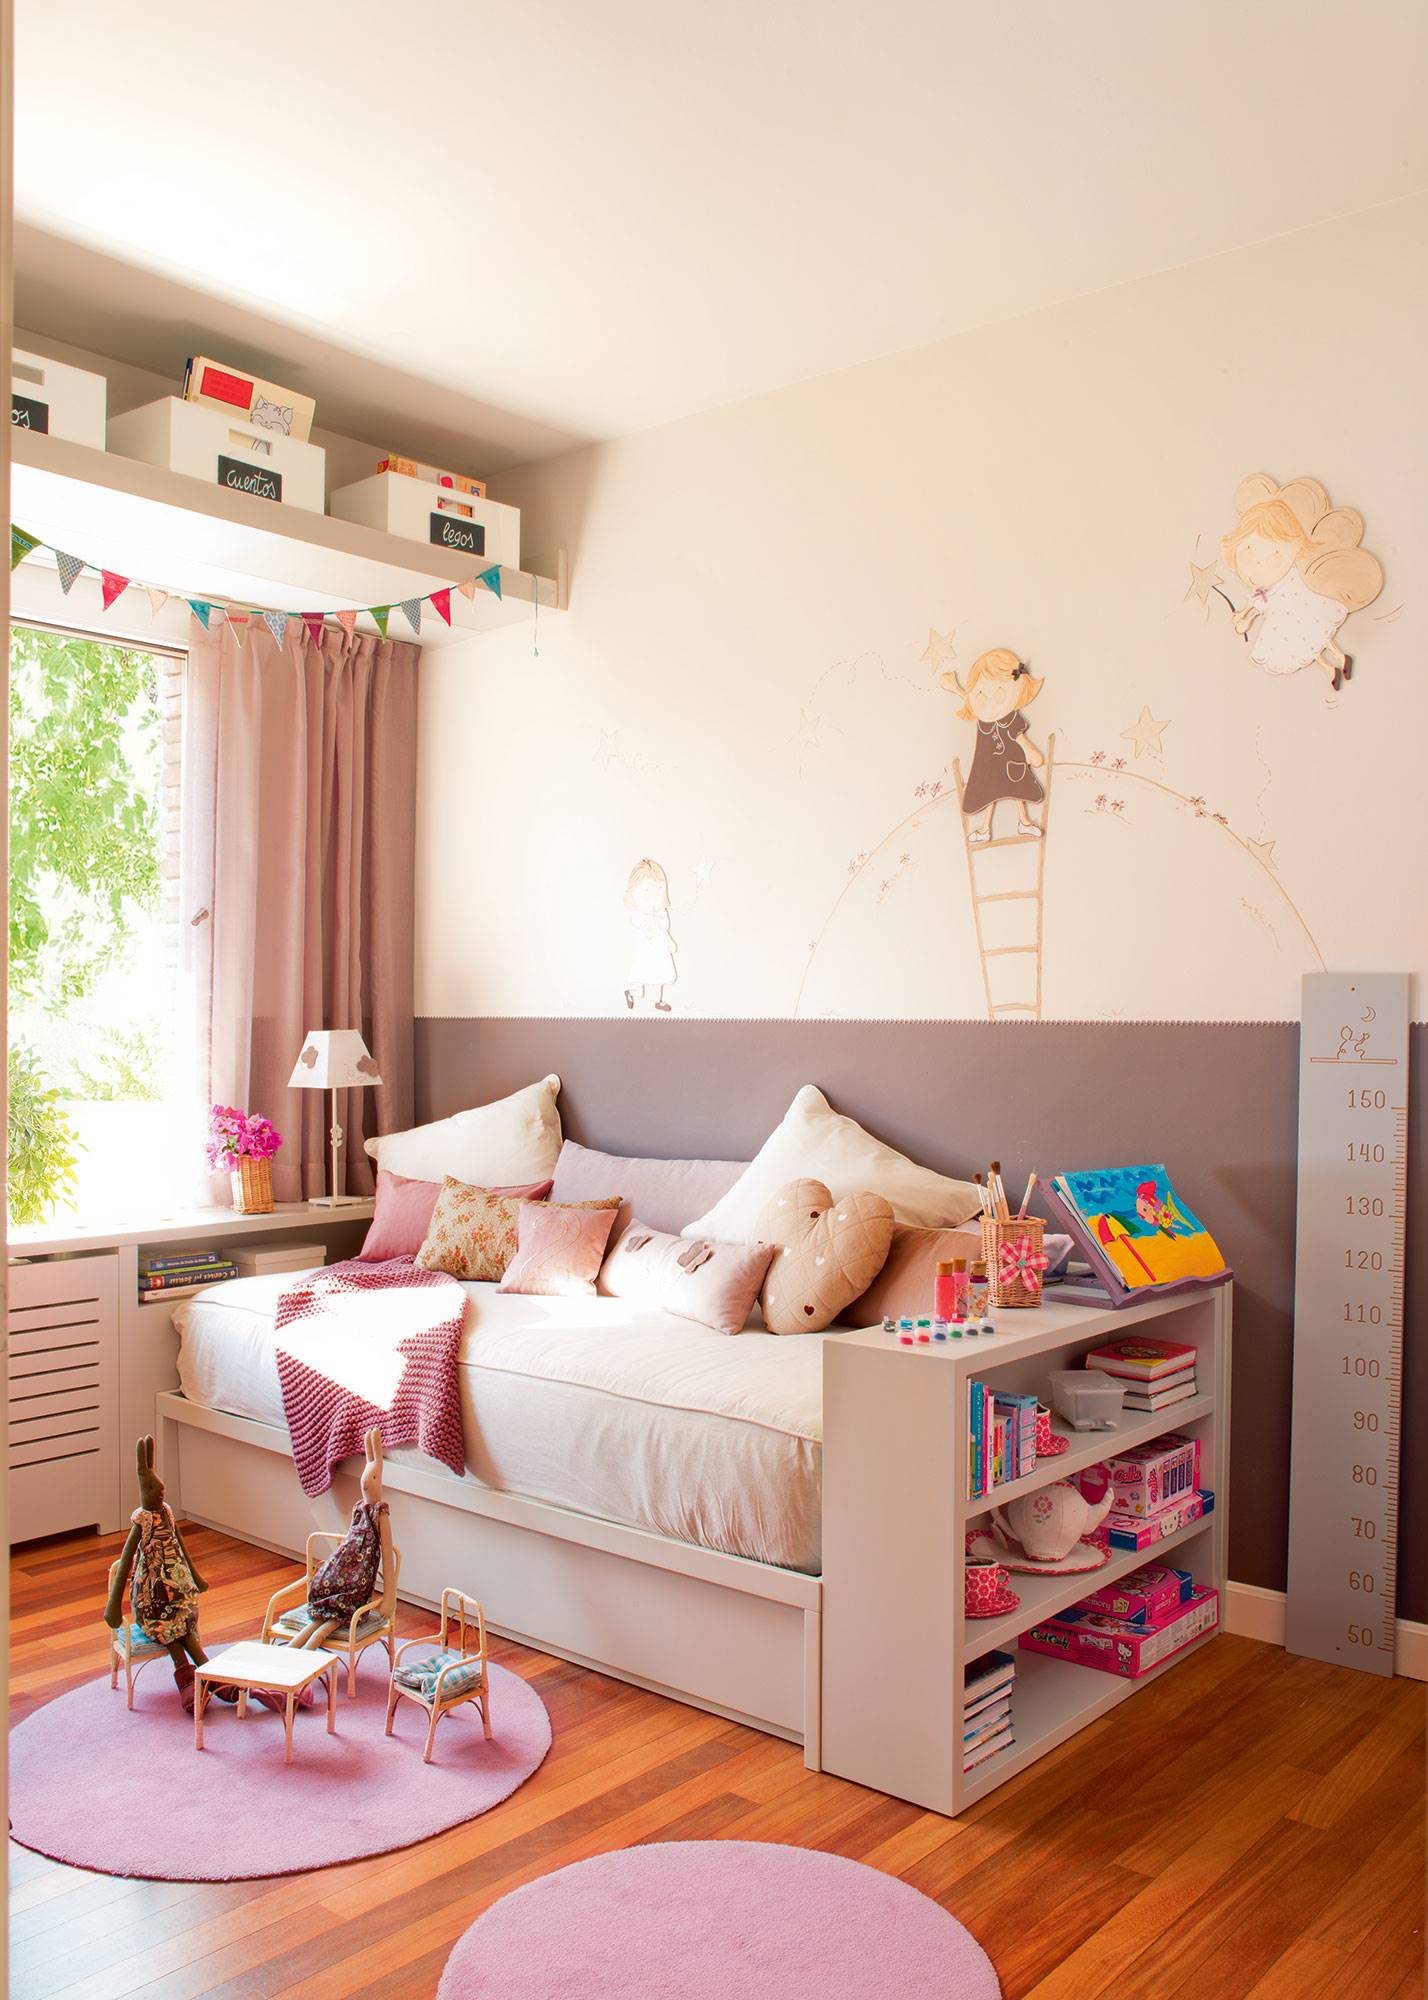 dormitorio-infantil-con-cama-arrimada-a-la-pared-zocalo-y-soluciones-para-guardar-juguetes 63ba48f9